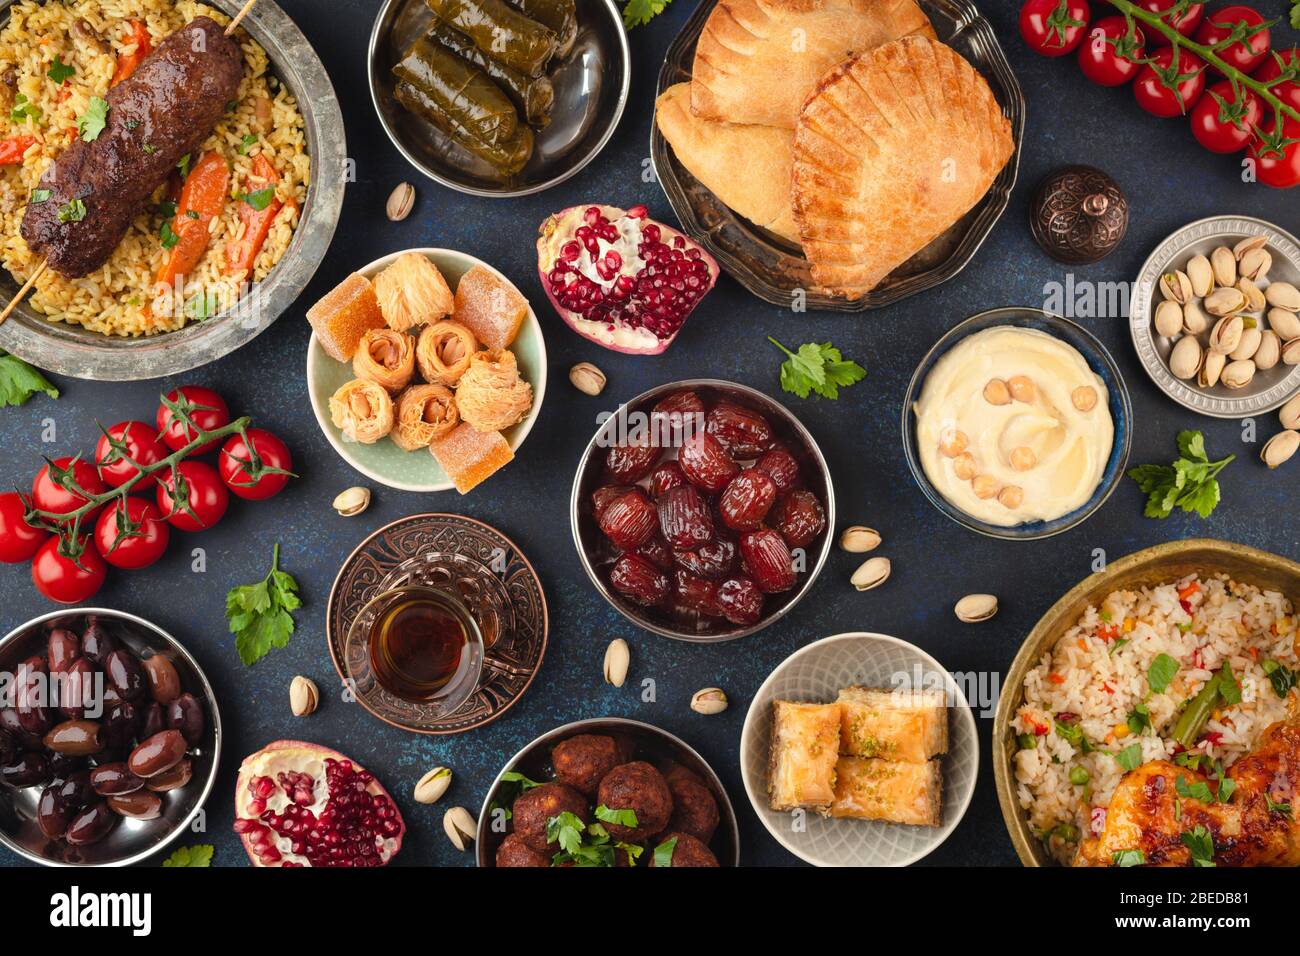 Ramadan Iftar food Stock Photo